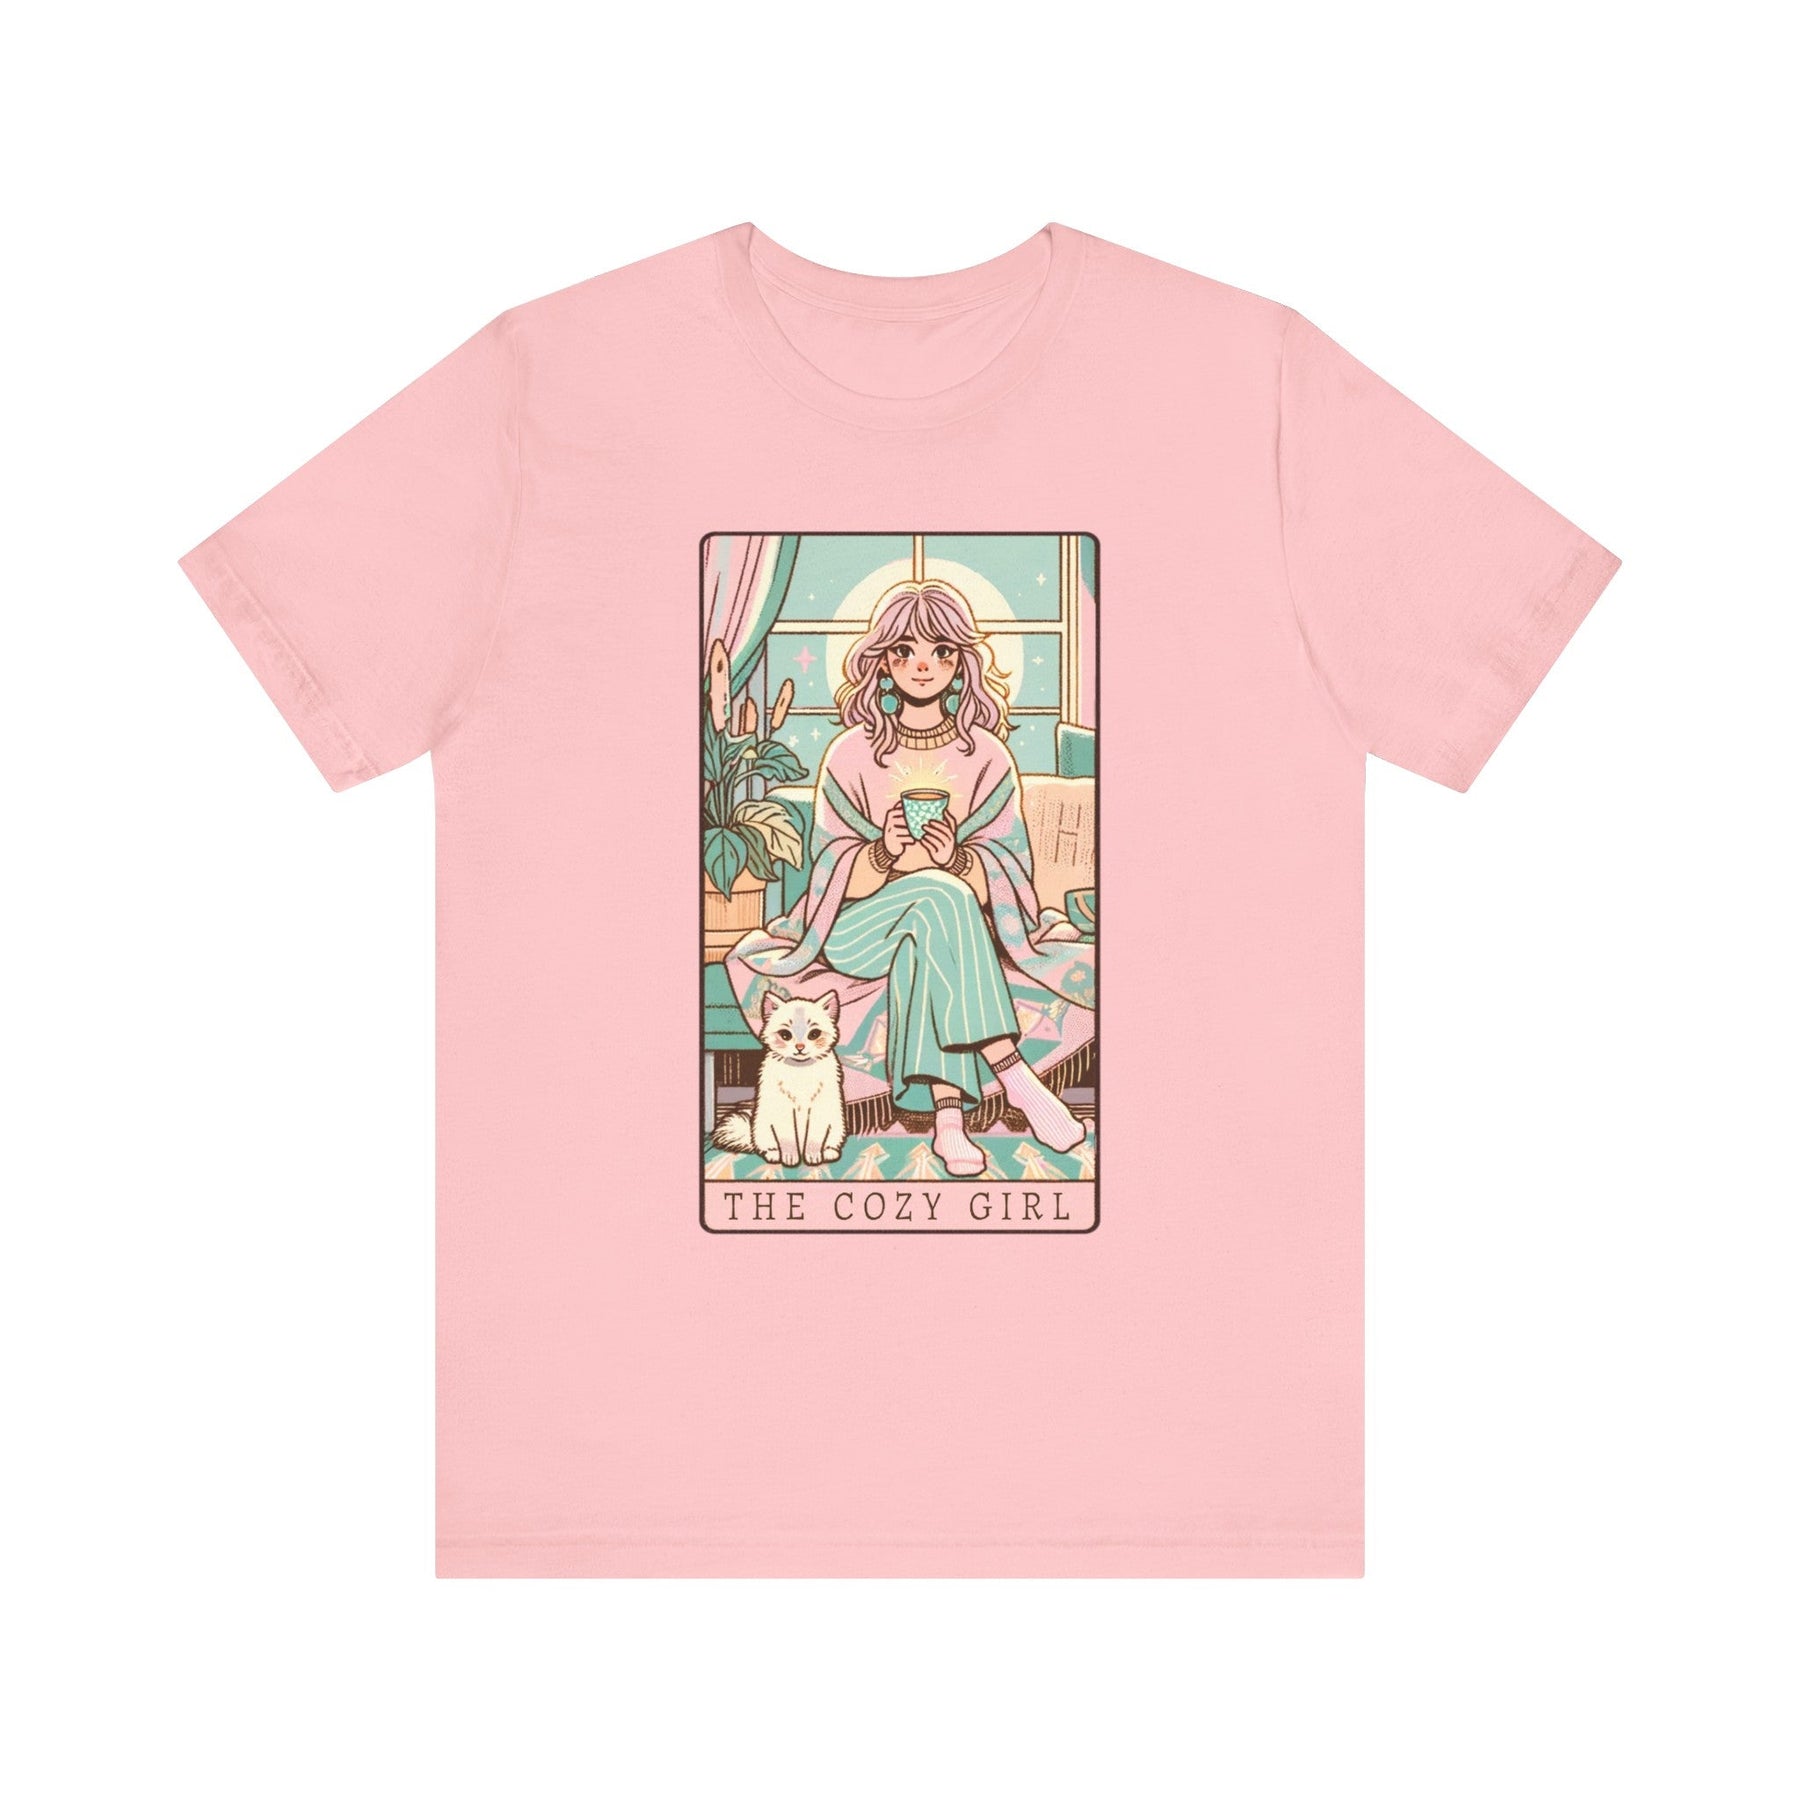 The Cozy Girl Day Tarot Card Short Sleeve Tee - Goth Cloth Co.T - Shirt58942815451614156806